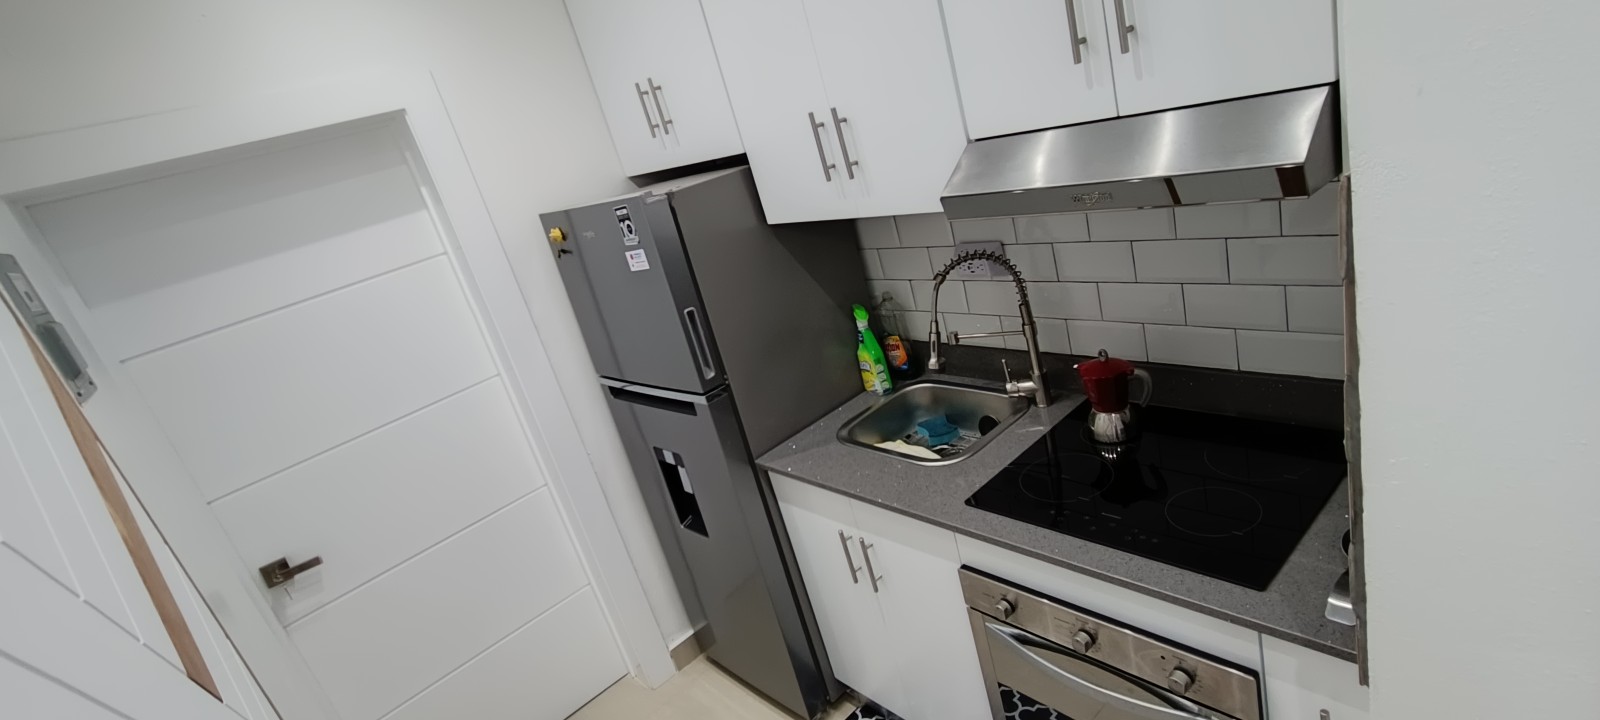 apartamentos - Airbnb estudio Amueblado atrás de la unión médica moderno, inteligente por wifi 2